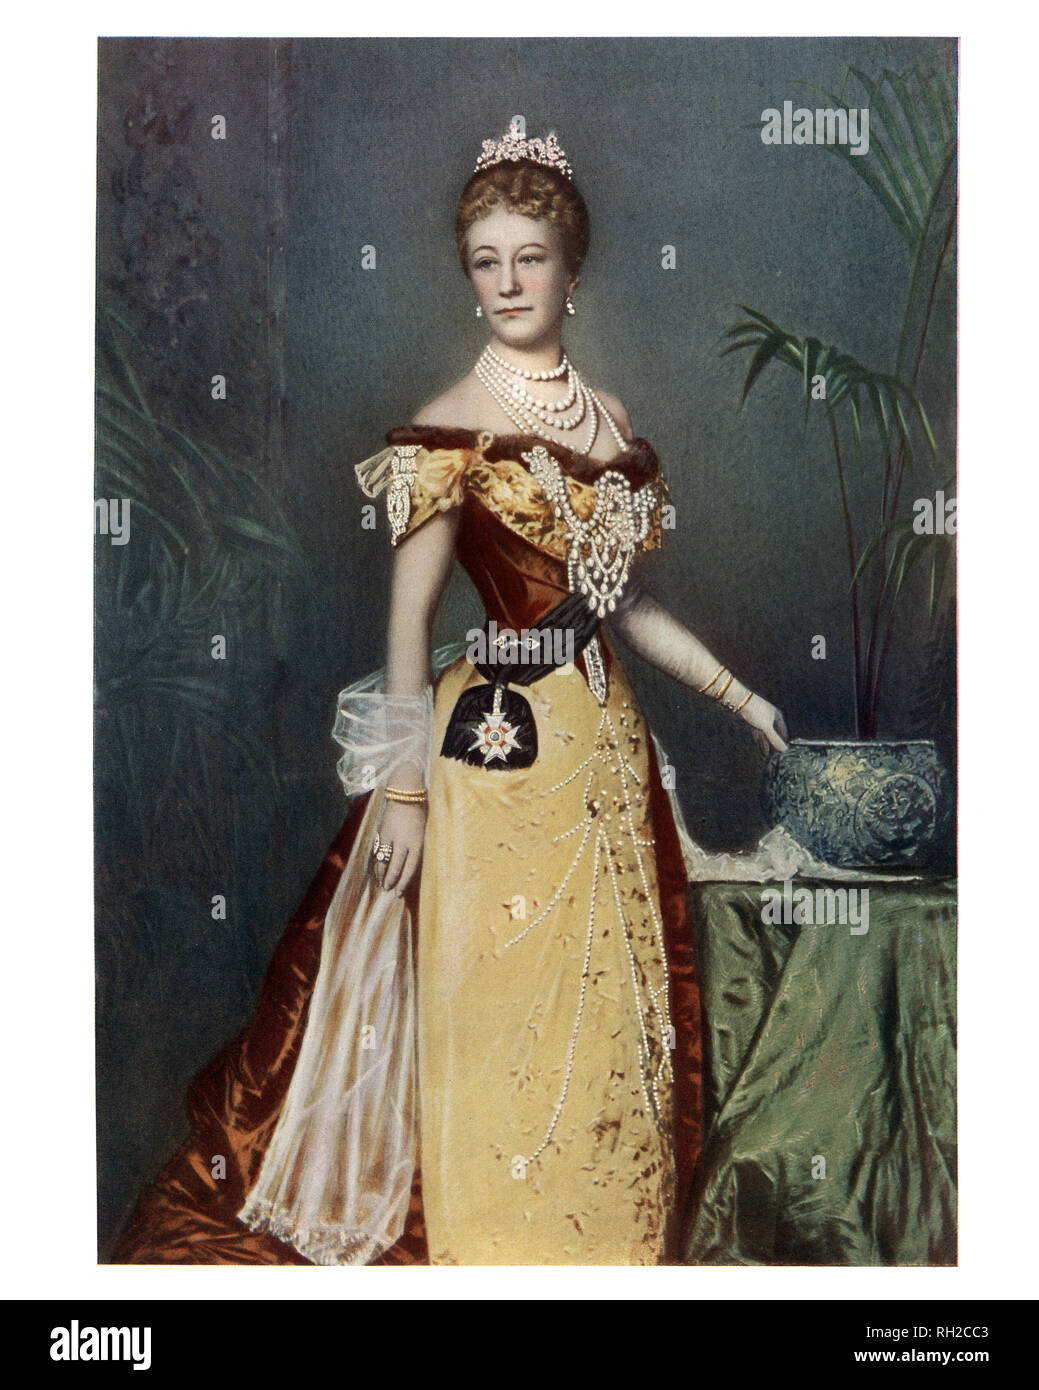 Augusta Victoria di Schleswig-Holstein, Tedesco Imperatrice, l'ultima imperatrice tedesca e regina di Prussia dal matrimonio di Guglielmo II, imperatore tedesco. Foto Stock